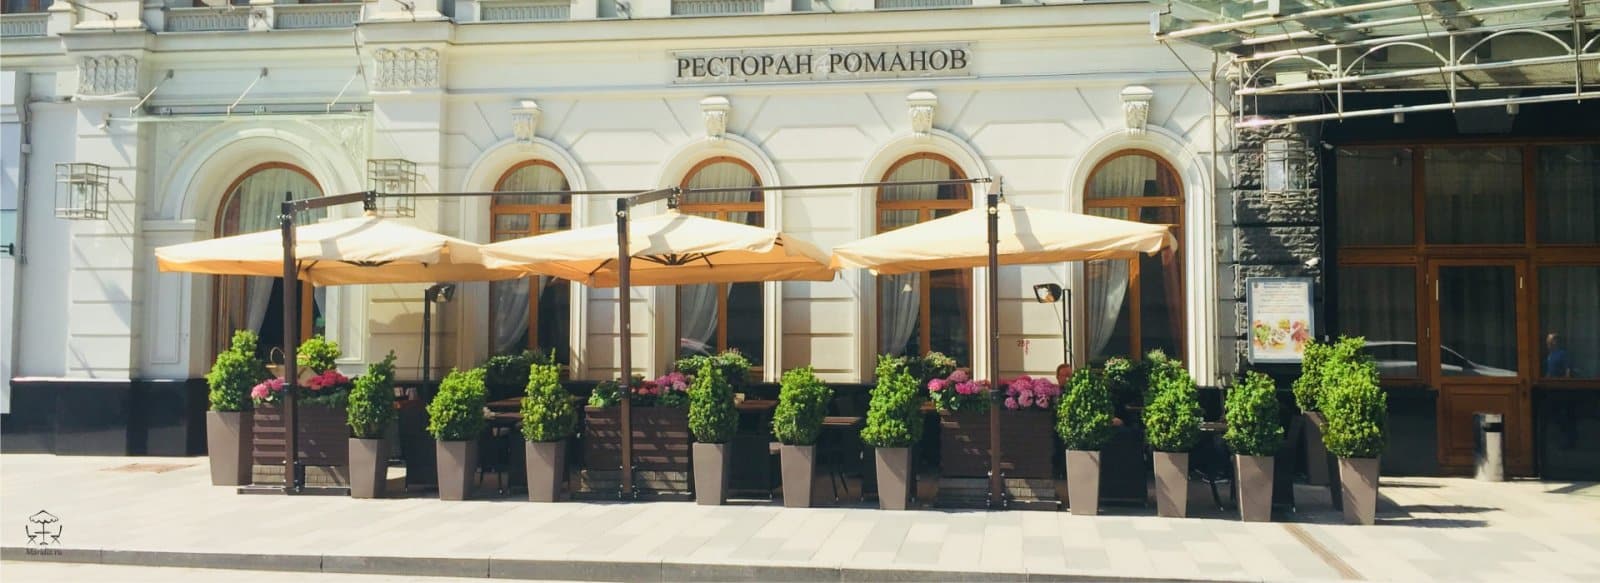 Проект летнего кафе для согласования в москве